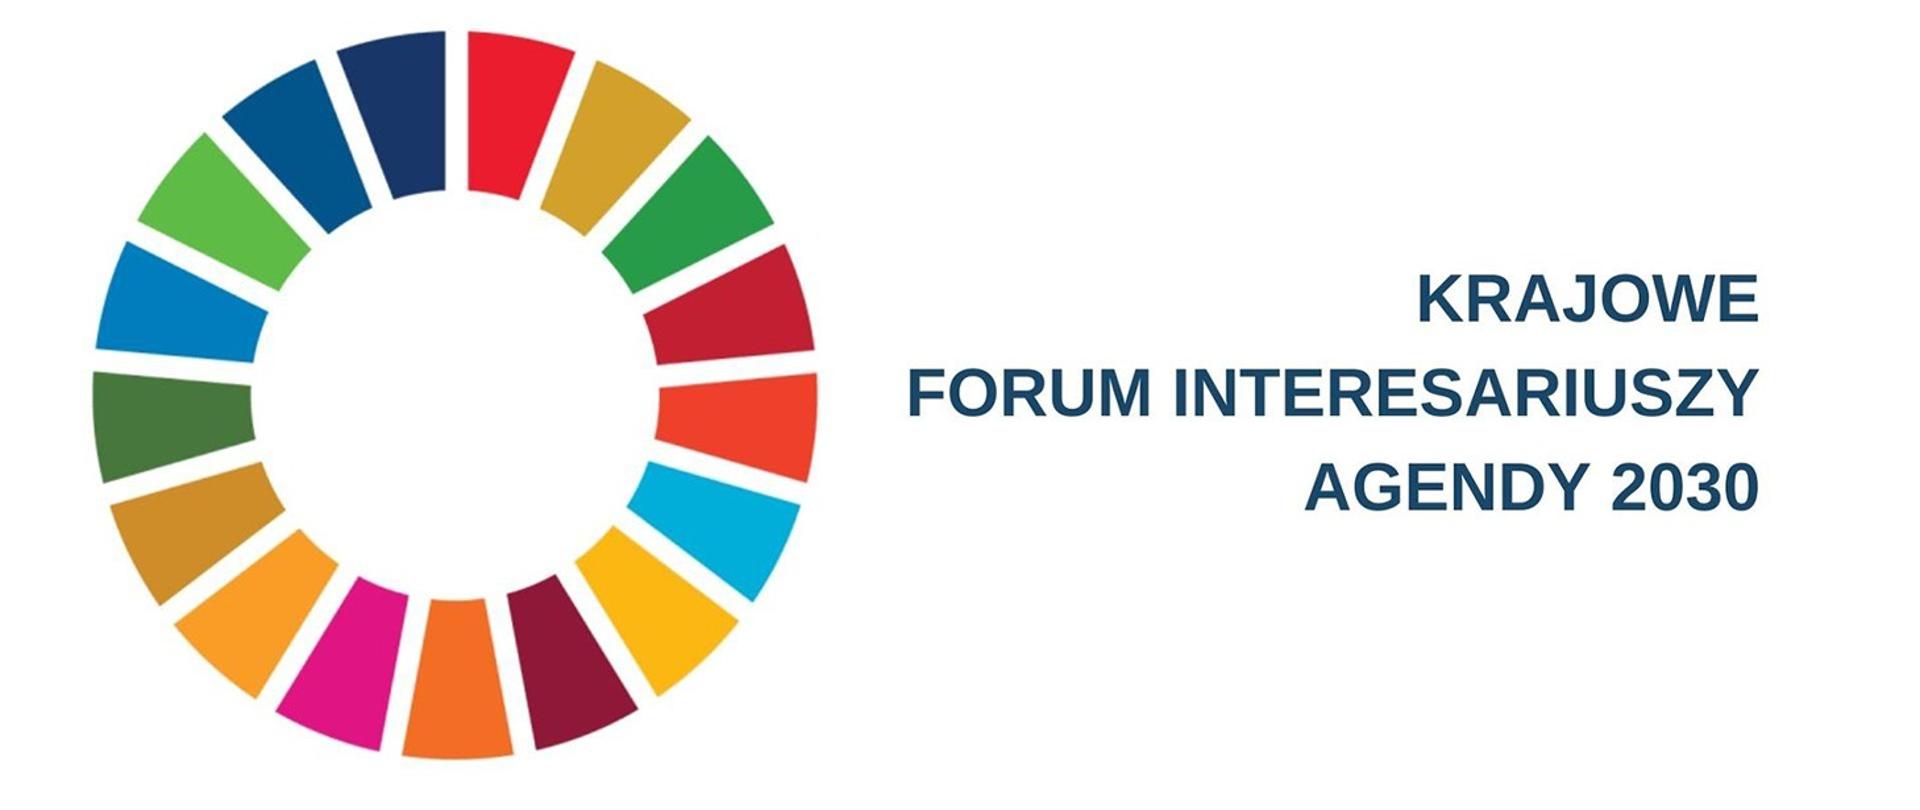 Krajowe Forum Interesariuszy Agendy 2030. Na grafice napis Krajowe Forum Interesariuszy Agendy 2030, a po lewej stronie kolorowe koło.